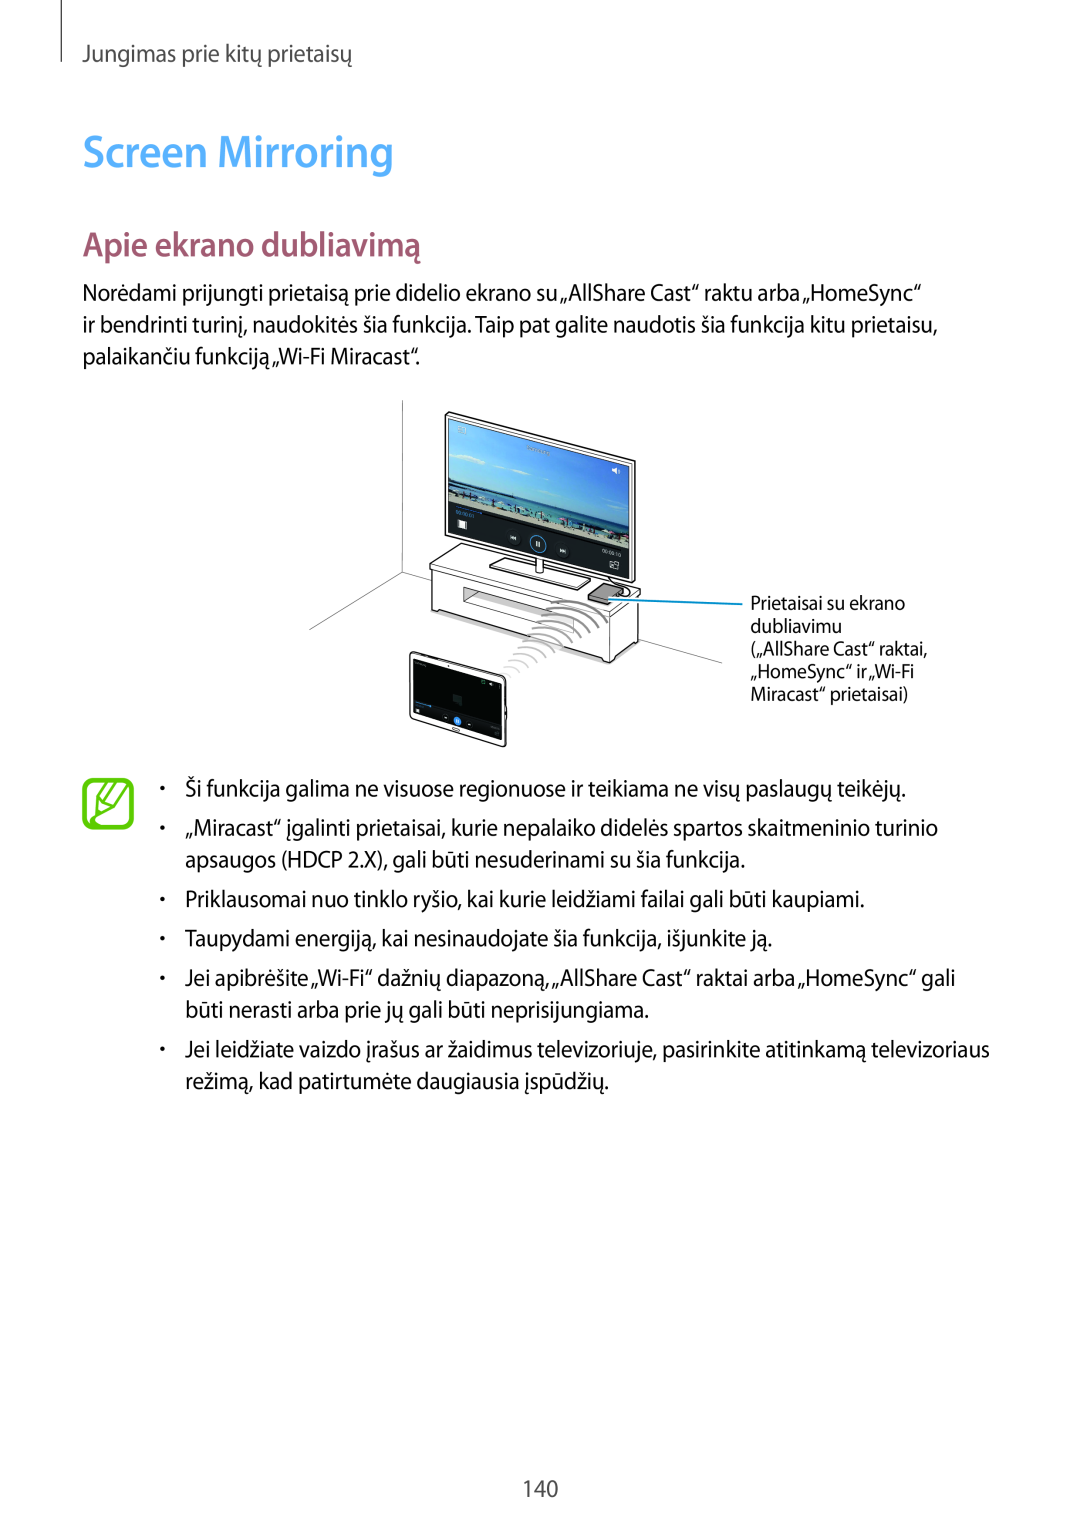 Samsung SM-T800NHAASEB, SM-T800NTSASEB manual Screen Mirroring, Apie ekrano dubliavimą, Jungimas prie kitų prietaisų 